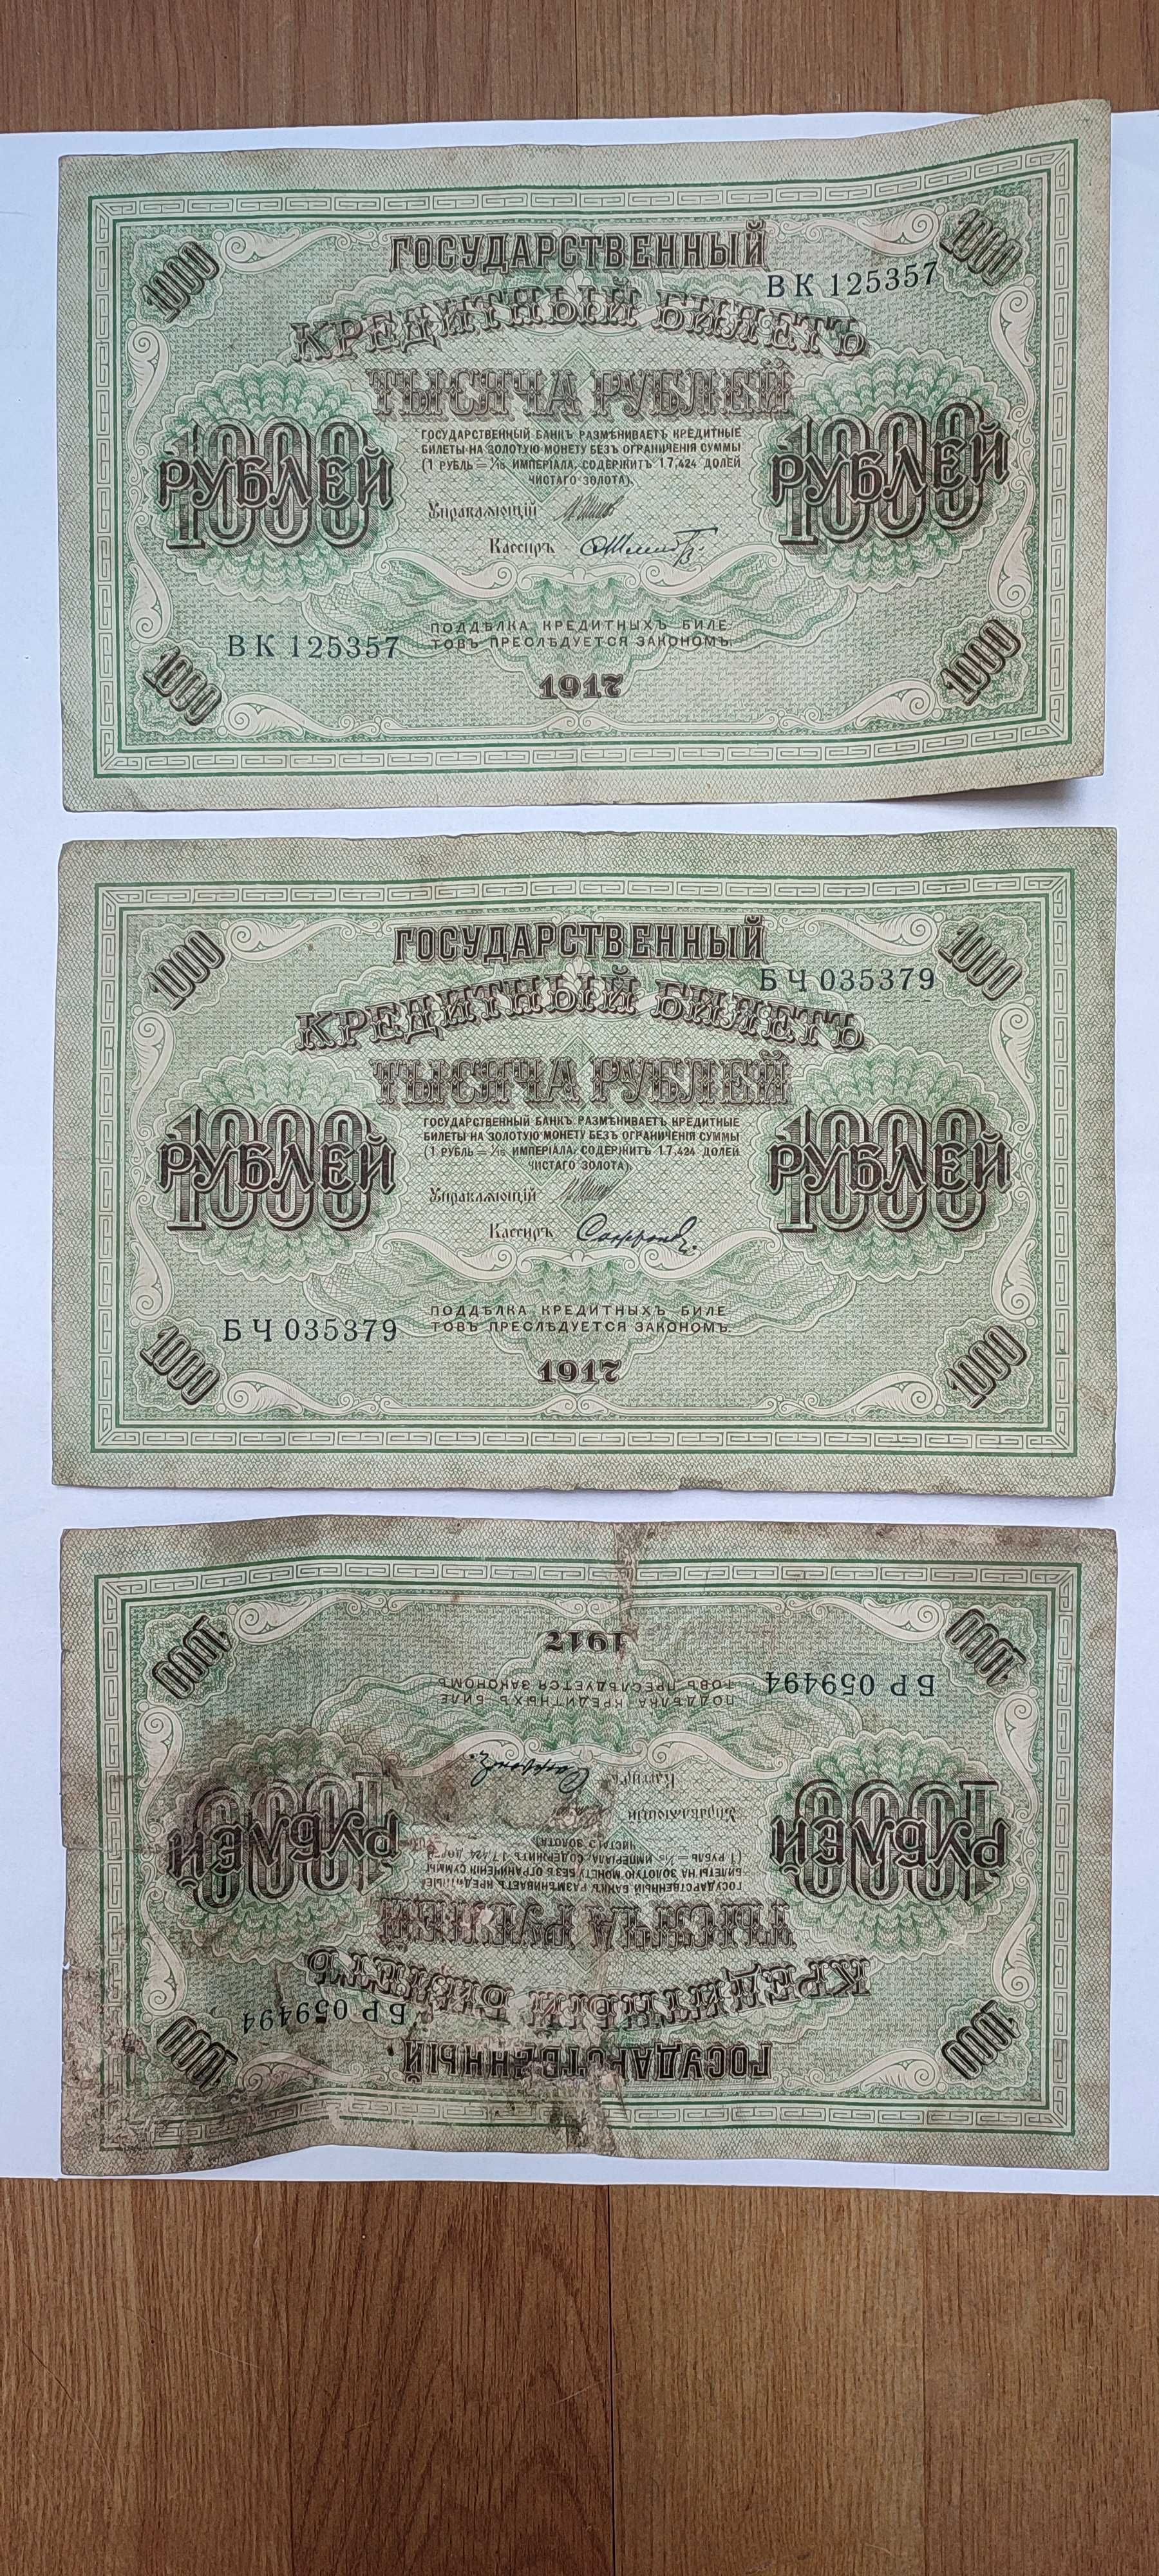 Stare banknoty sprzedam